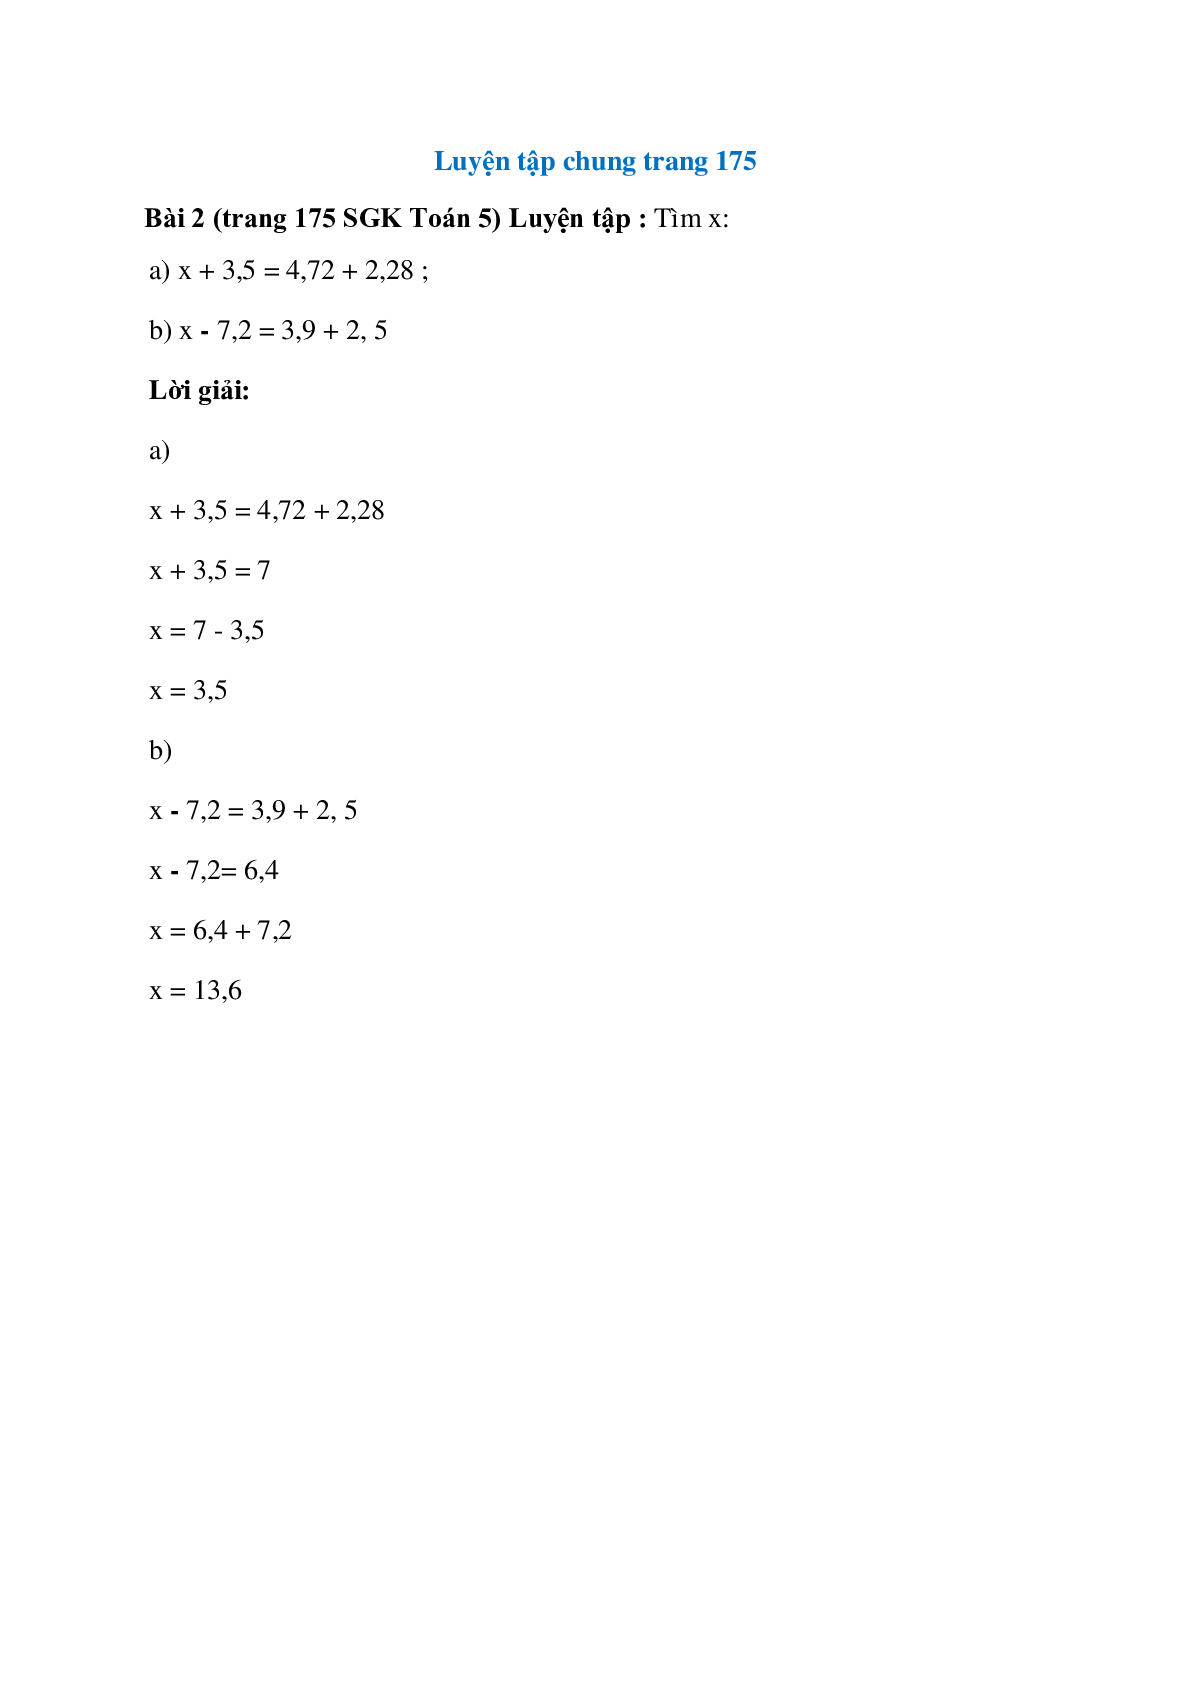 Tìm x: x + 3,5 = 4,72 + 2,28 (trang 1)